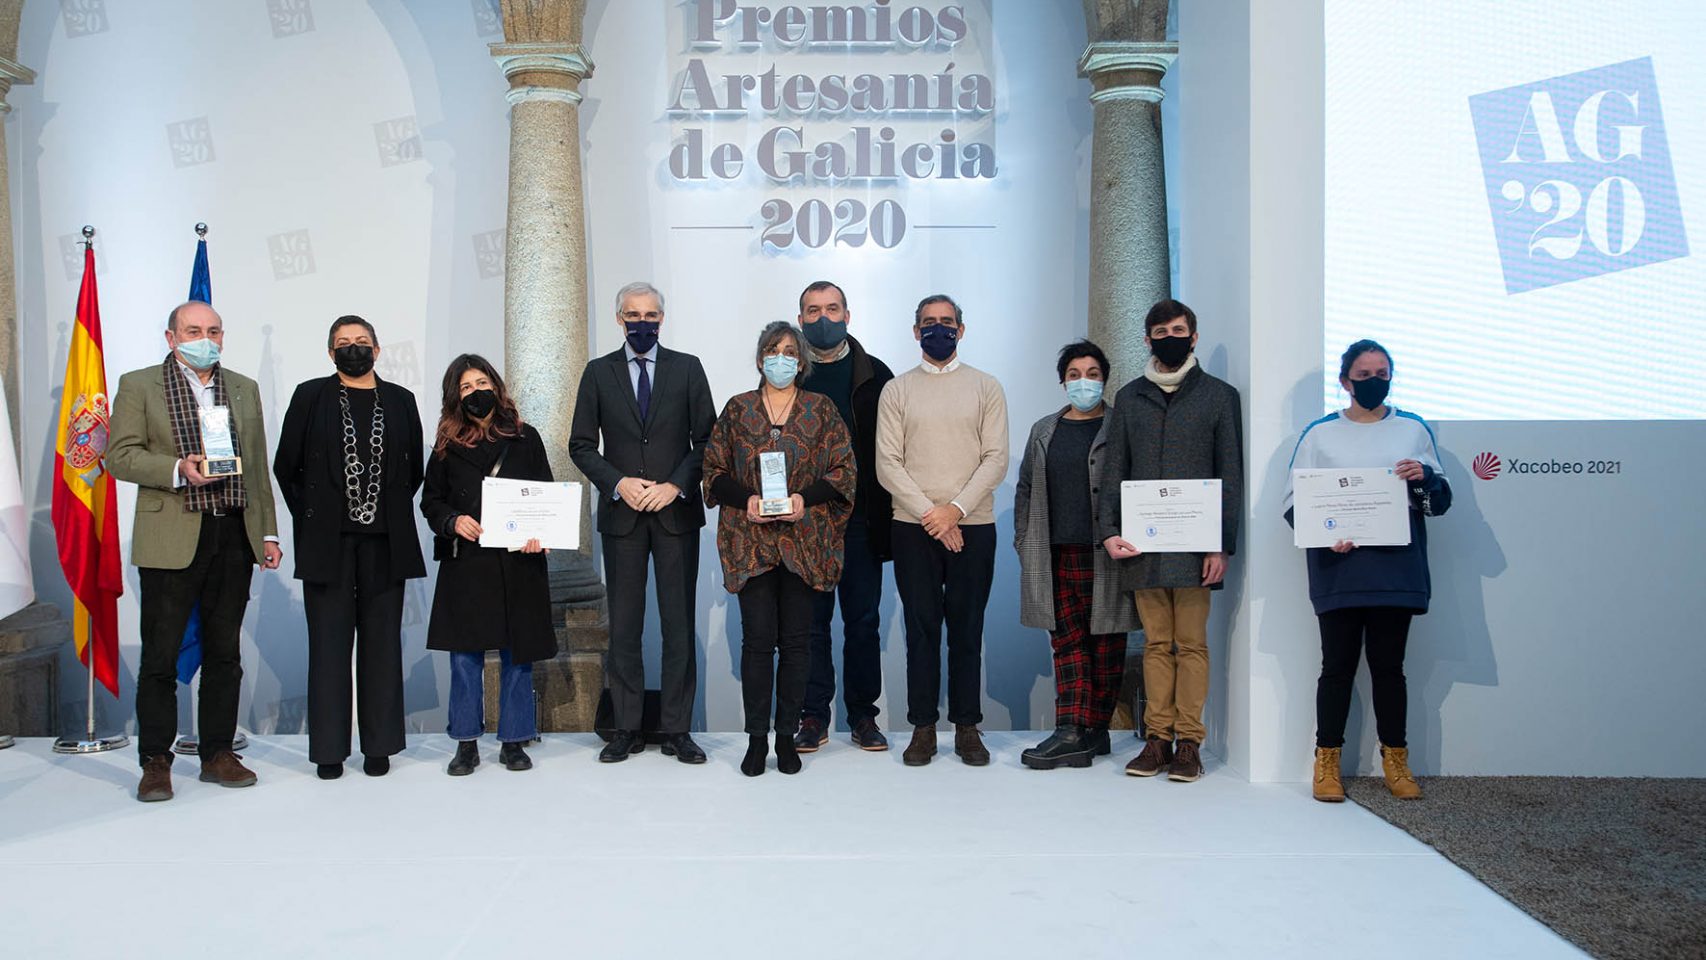 Finalistas y ganadores del Premio Artesania de Galicia